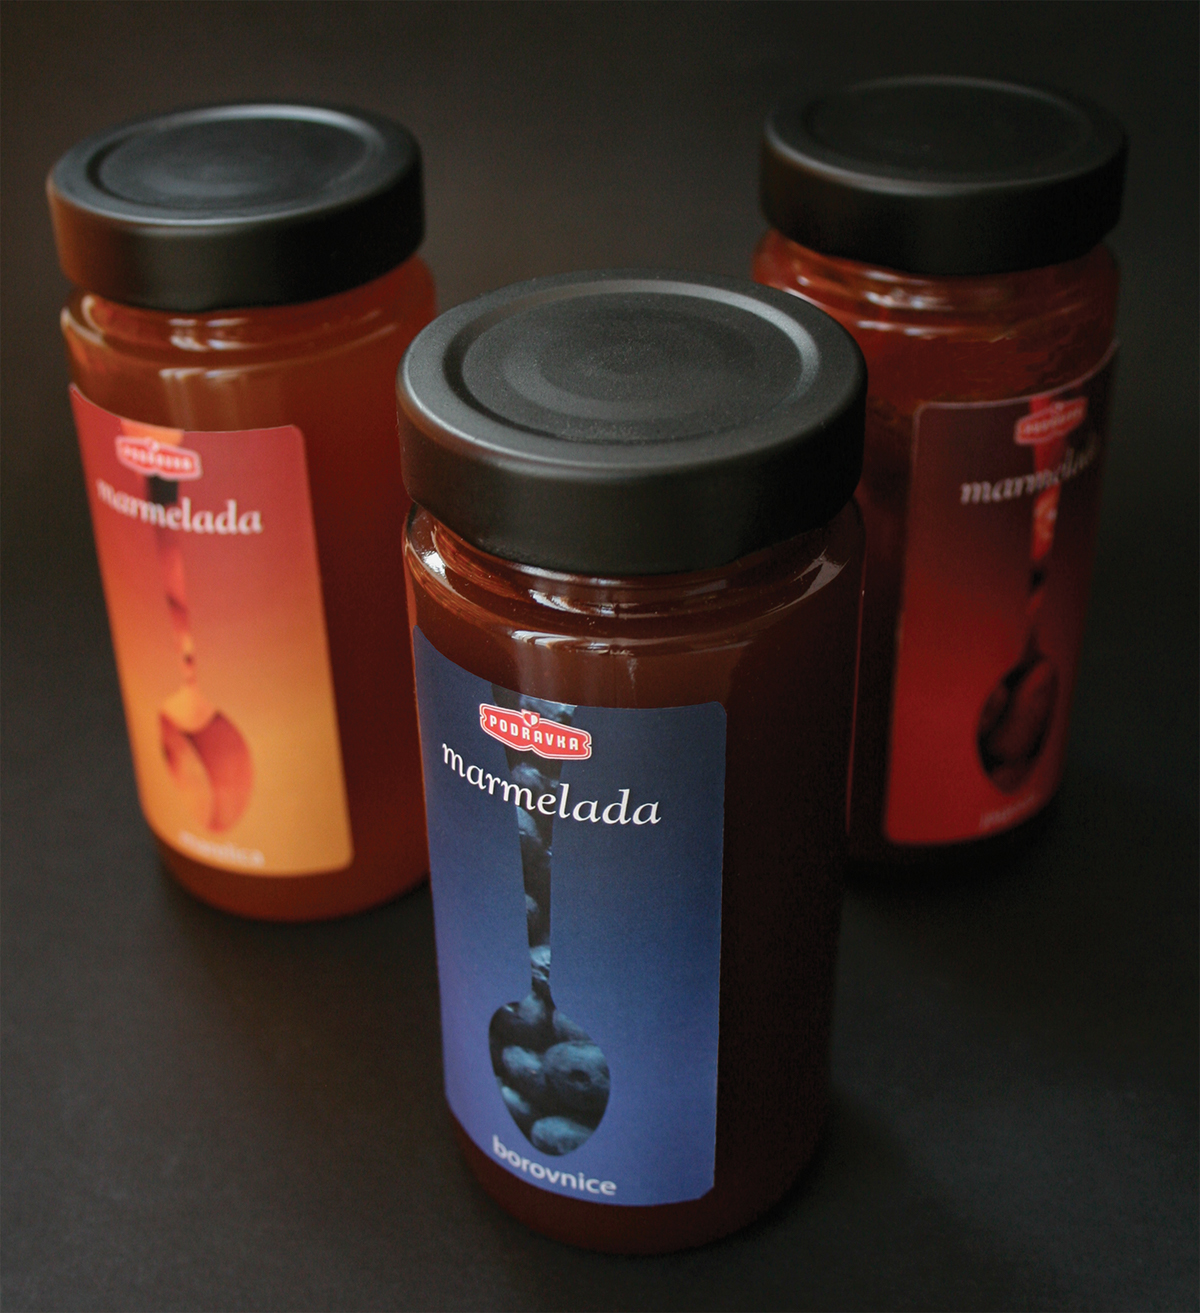 marmelade Food Packaging large scale product jar